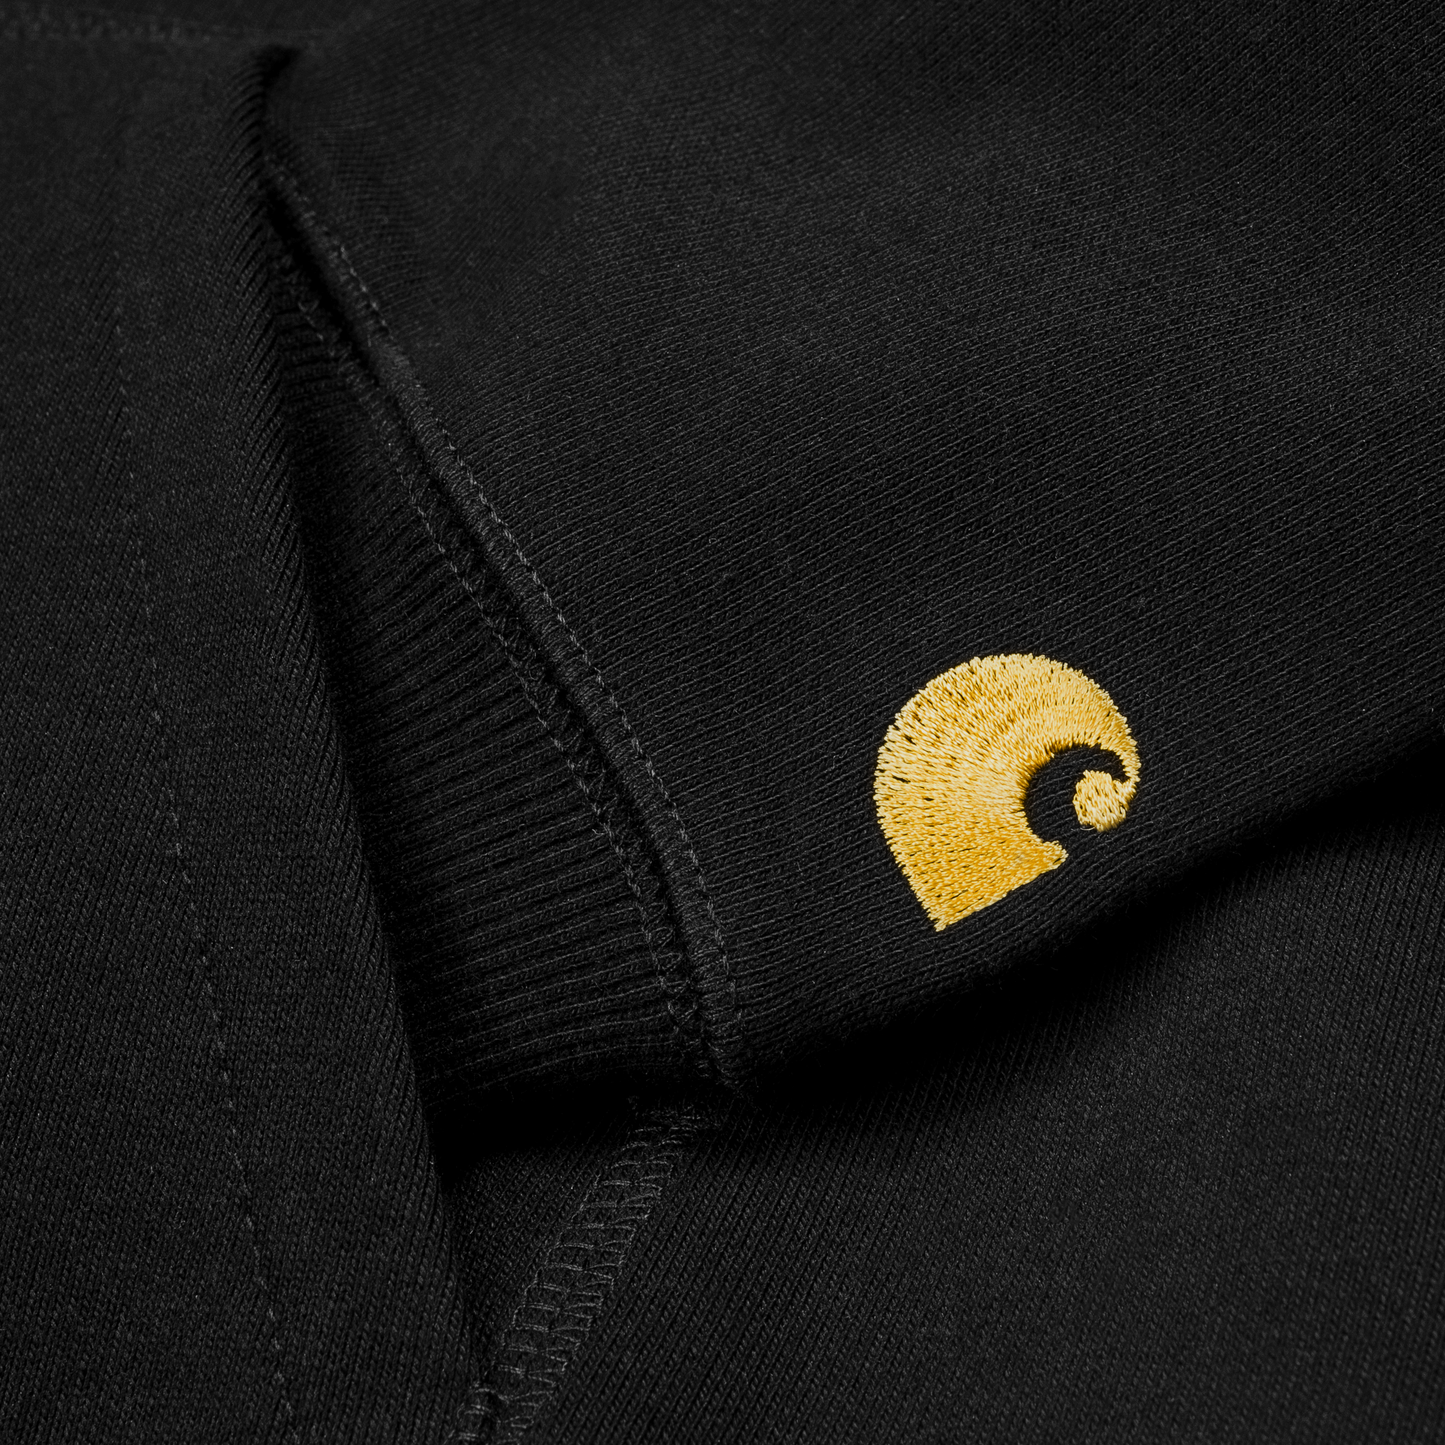 Carhartt WIP Hooded Chase Sweat em preto com detalhes em dourado. Foto de detalhe do bordado na manga.